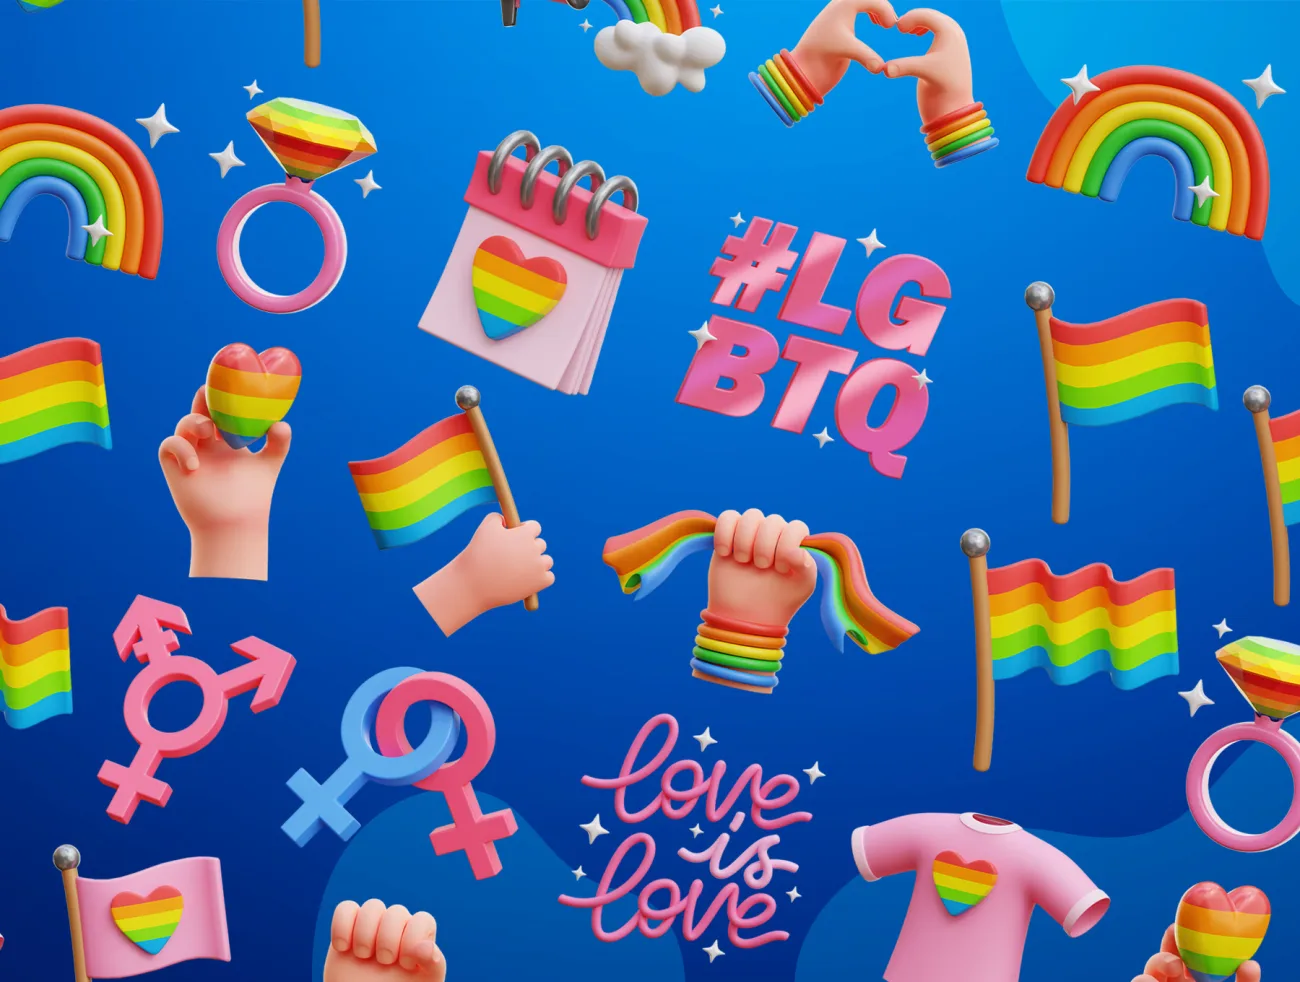 21款男女同性主题3D图标模型 LGBTQ 3D Icons maya 3dmax c4d blender psd插图1